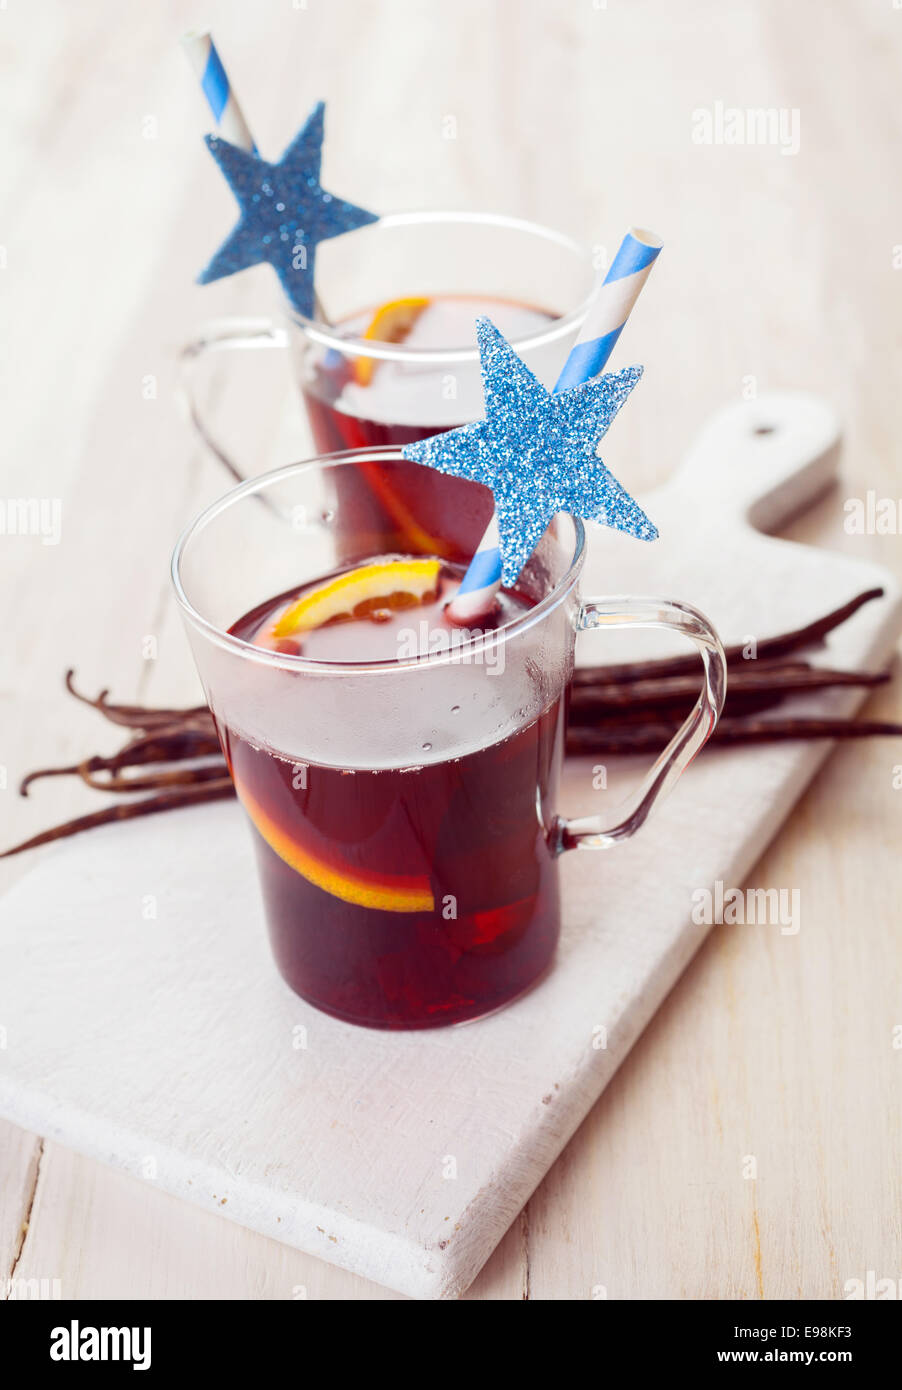 Zwei festliche Gläser Glühwein Weihnachten Wein oder Punsch mit Gewürzen gewürzt und mit einem Strohhalm serviert Orangenscheiben dekoriert mit Stockfoto